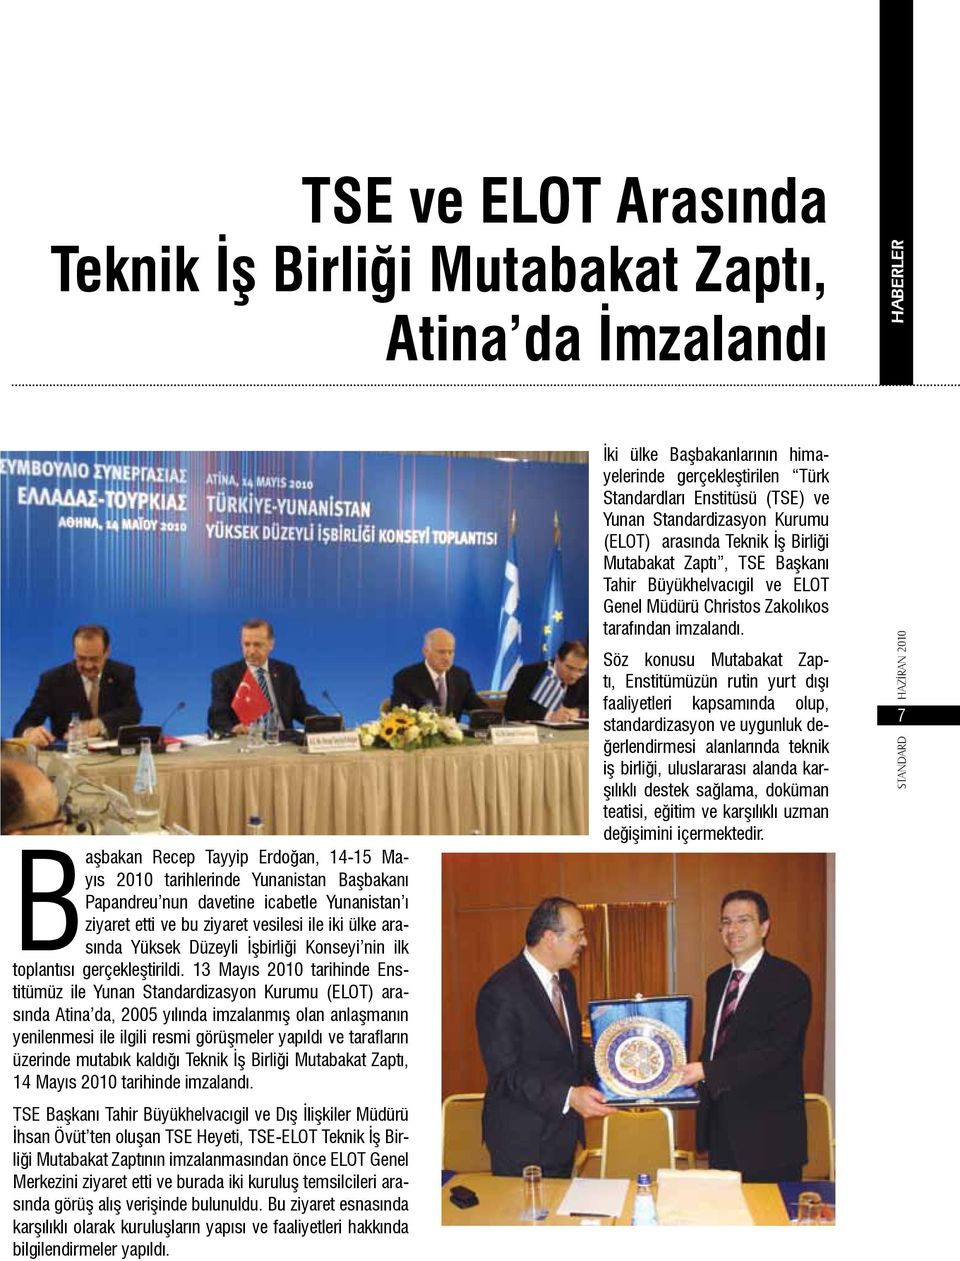 13 Mayıs 2010 tarihinde Enstitümüz ile Yunan Standardizasyon Kurumu (ELOT) arasında Atina da, 2005 yılında imzalanmış olan anlaşmanın yenilenmesi ile ilgili resmi görüşmeler yapıldı ve tarafların